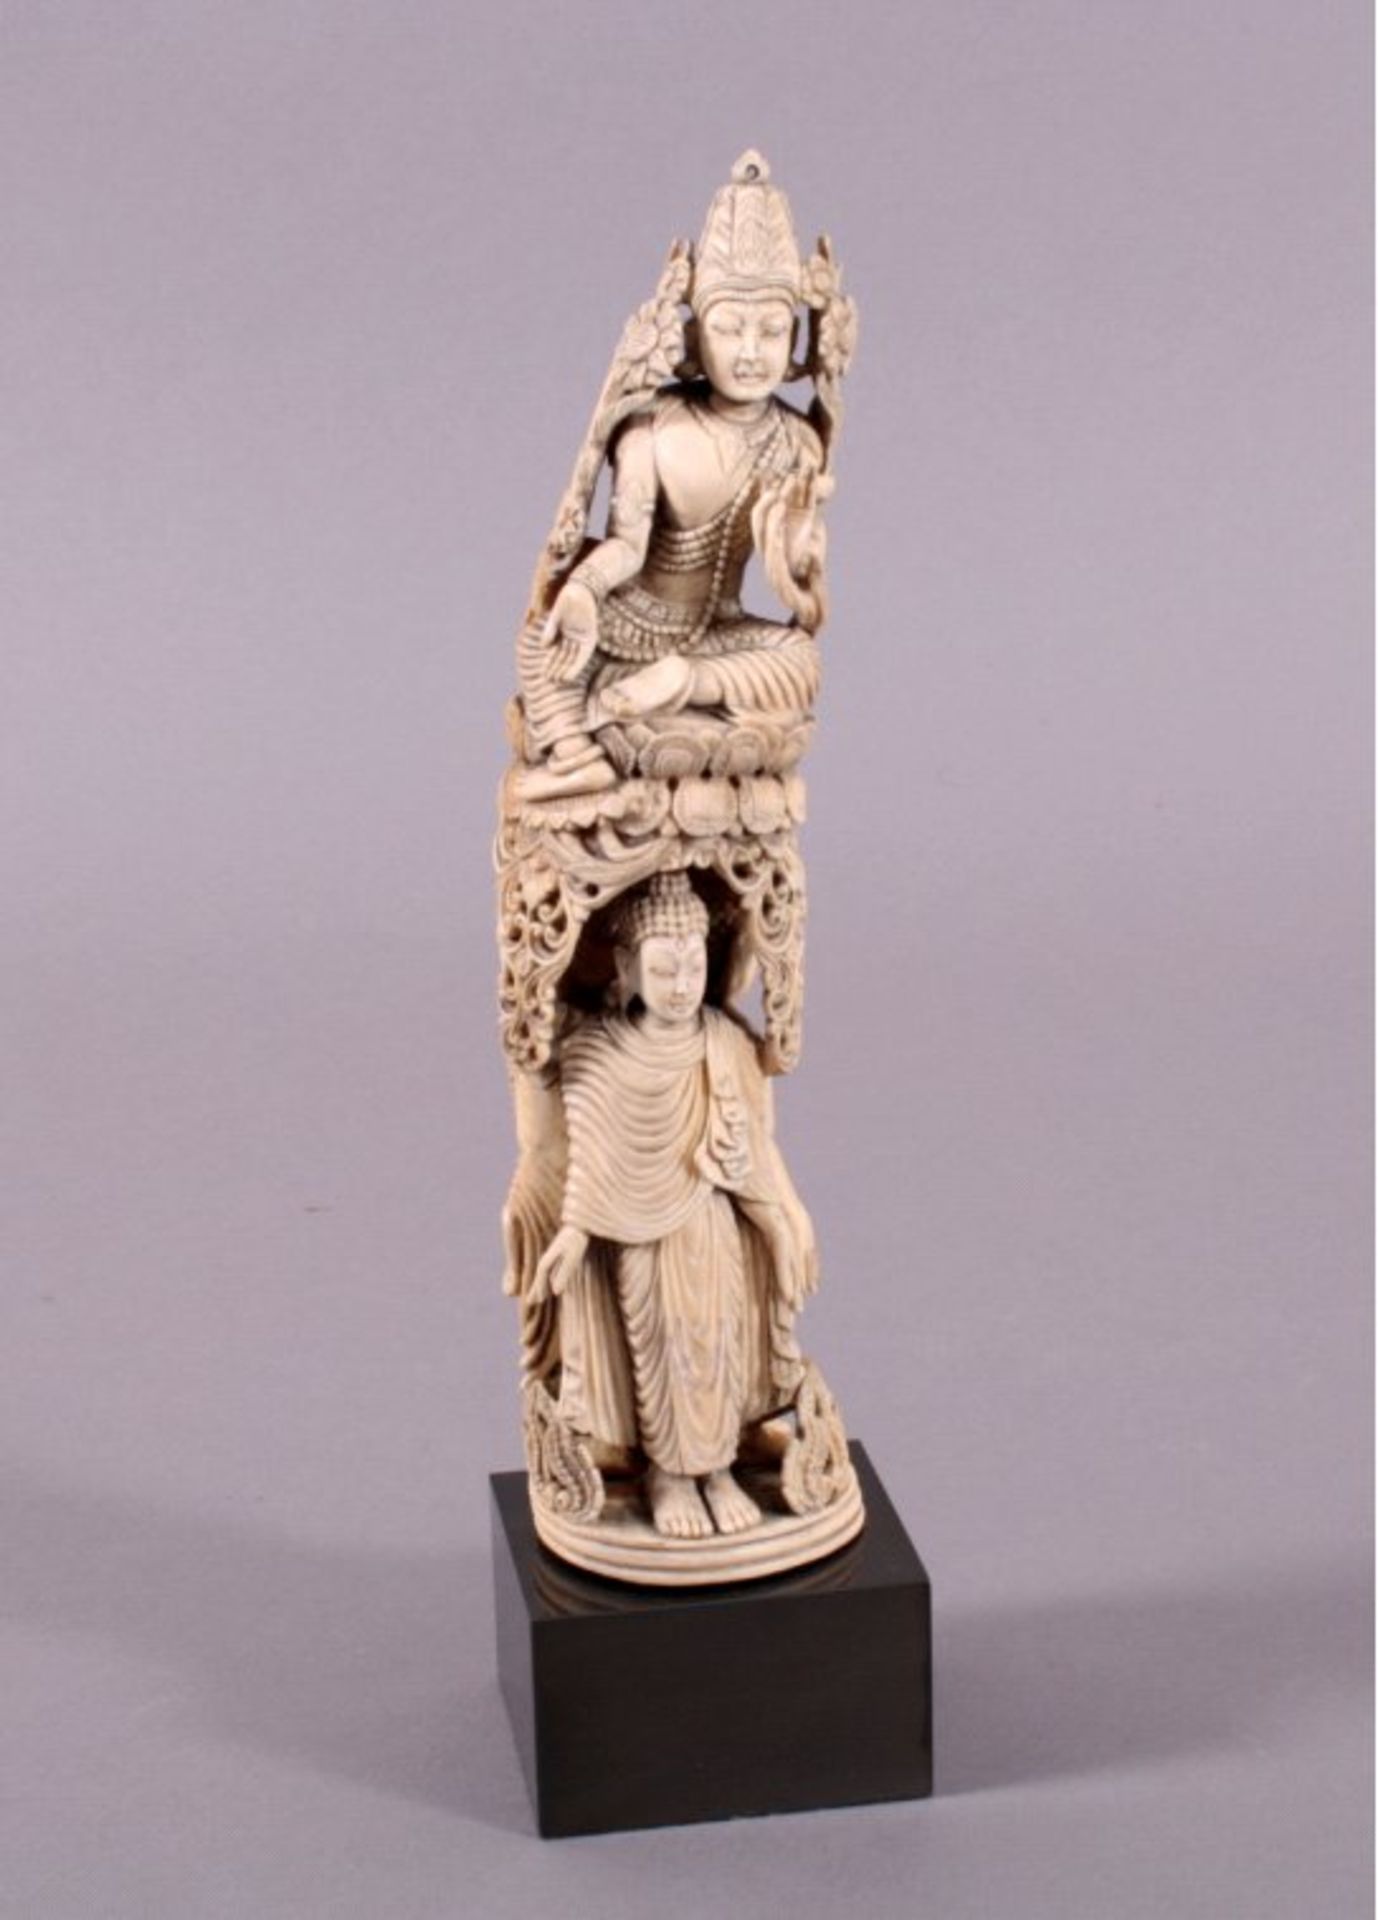 Elfenbein-Skulptur, Südostasien 18./19. Jh.meisterhafte, figürliche Schnitzarbeit, bekrönend sieht